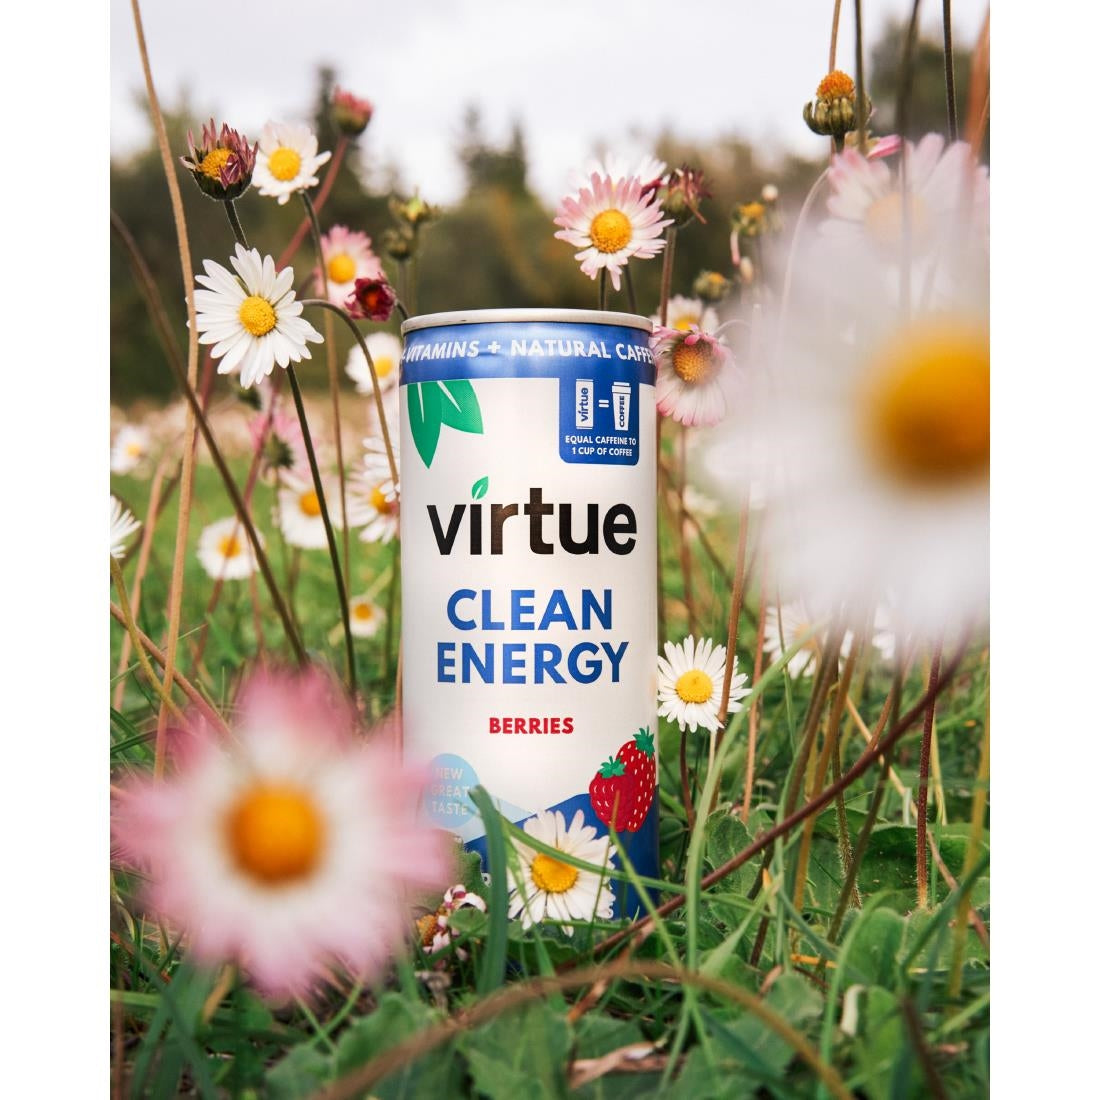 HS862 Virtue Clean Energy Berries Drink 250ml (Pack of 12)